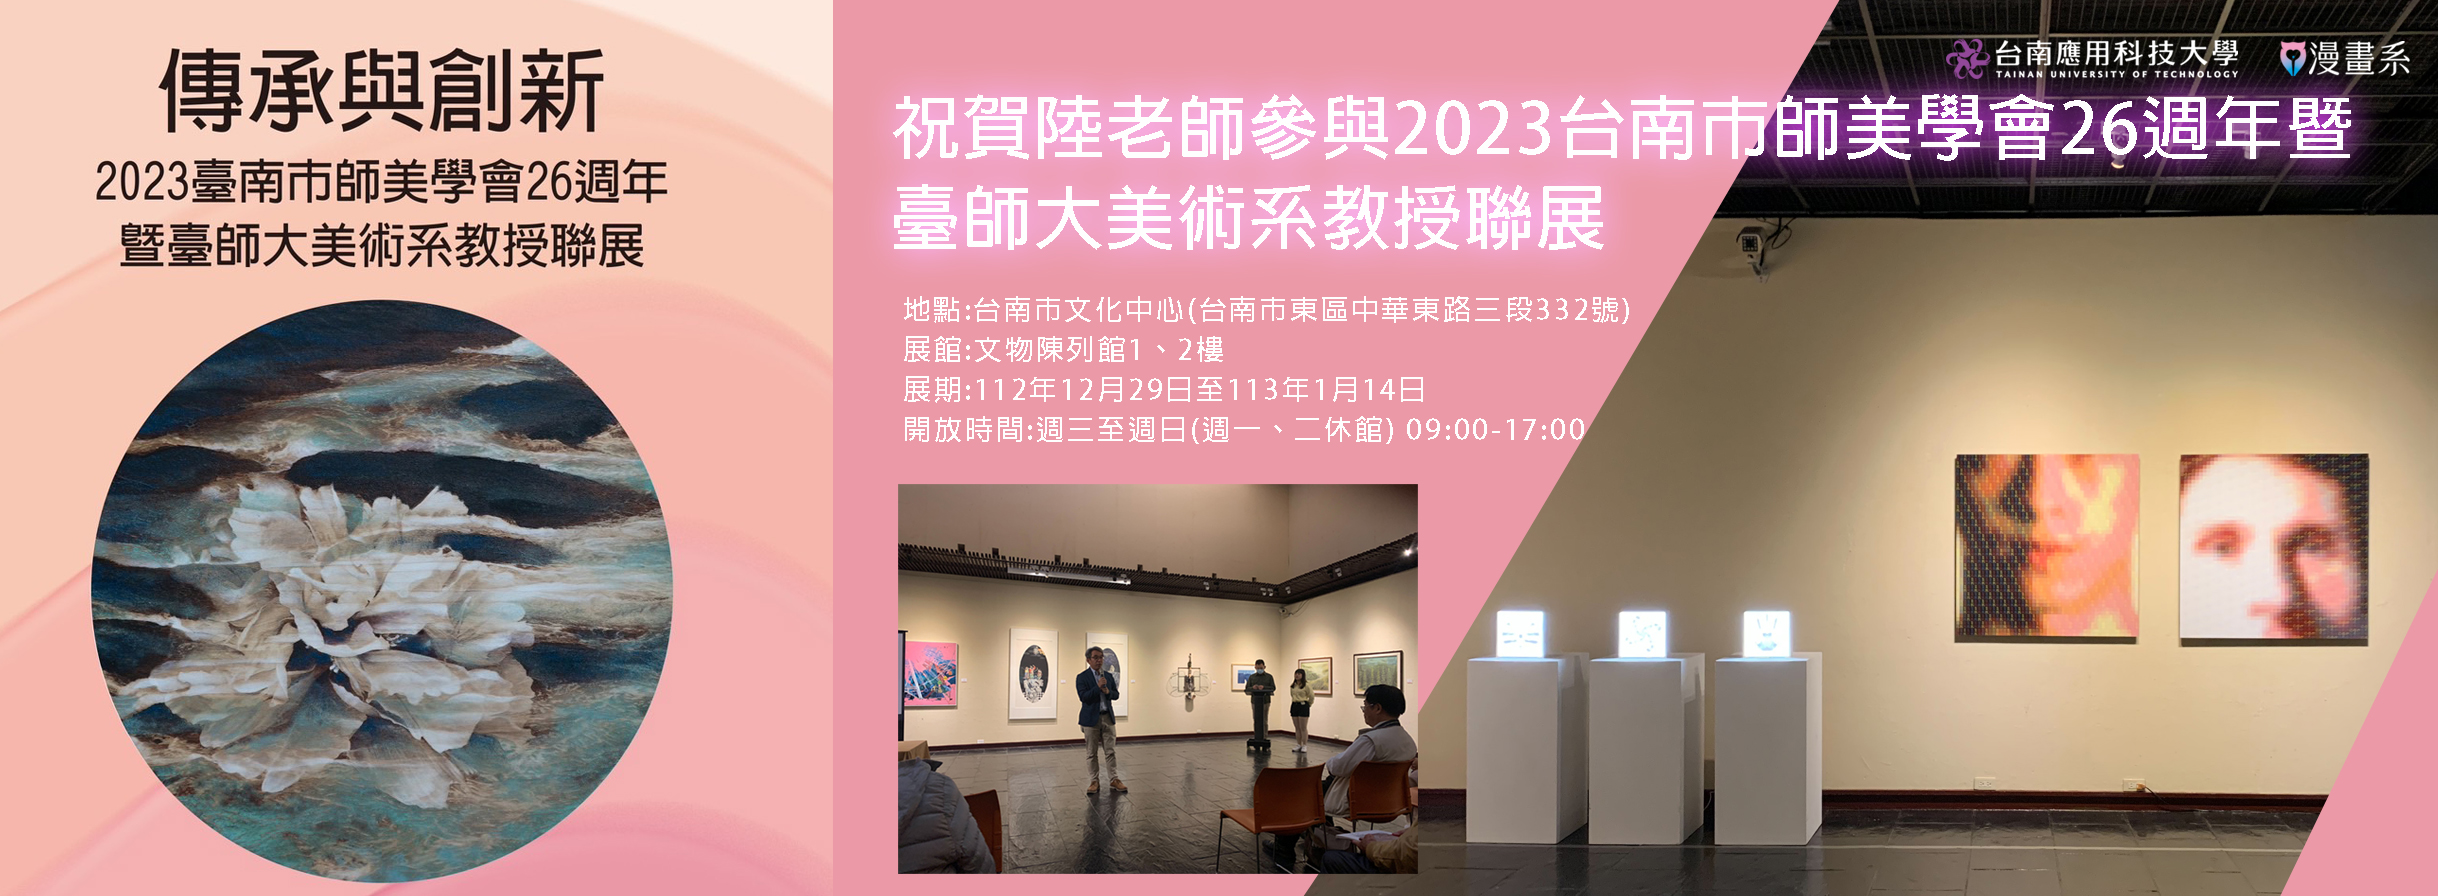 祝賀陸老師參與2023台南市師美學會26週年暨臺師大美術系教授聯展